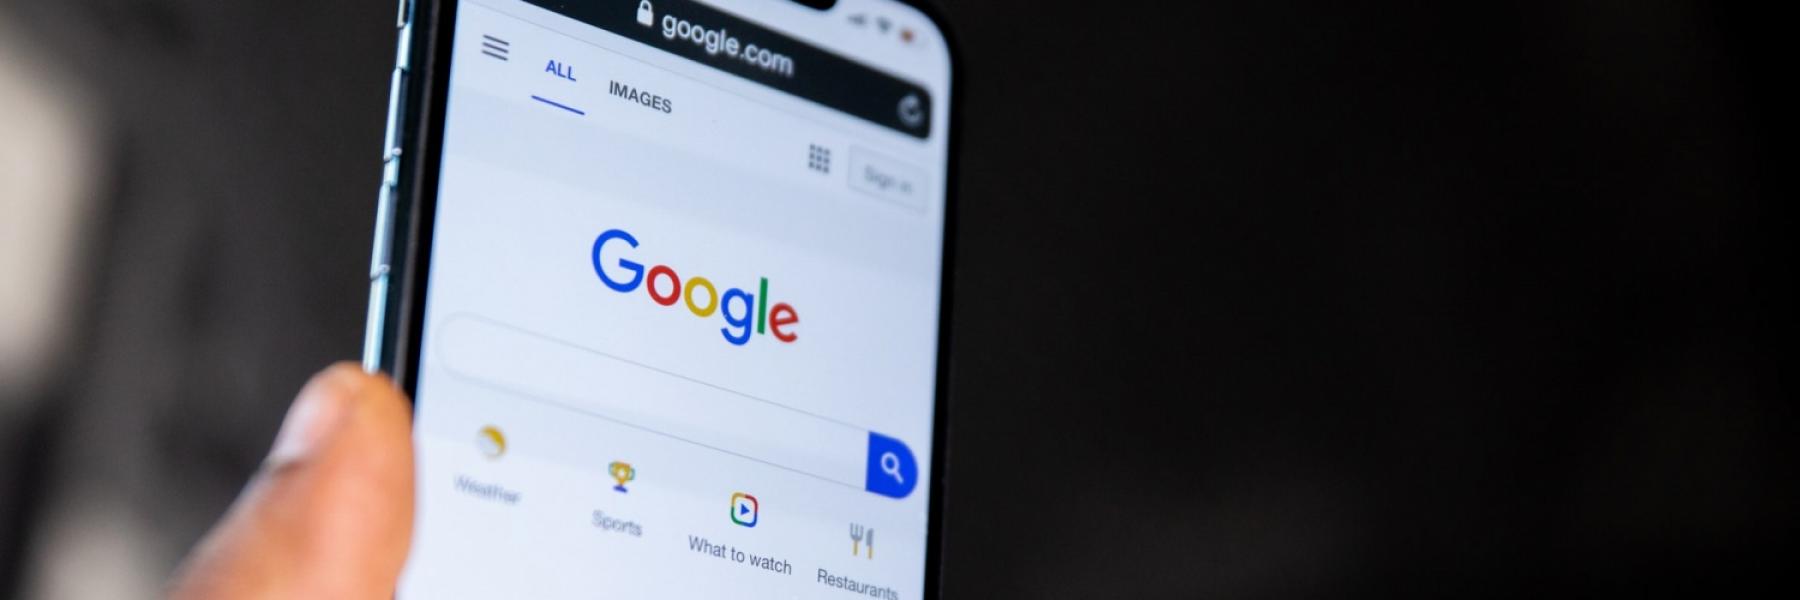 الوصفات الـ 10 الأكثر بحثًا على محرك غوغل في 2021